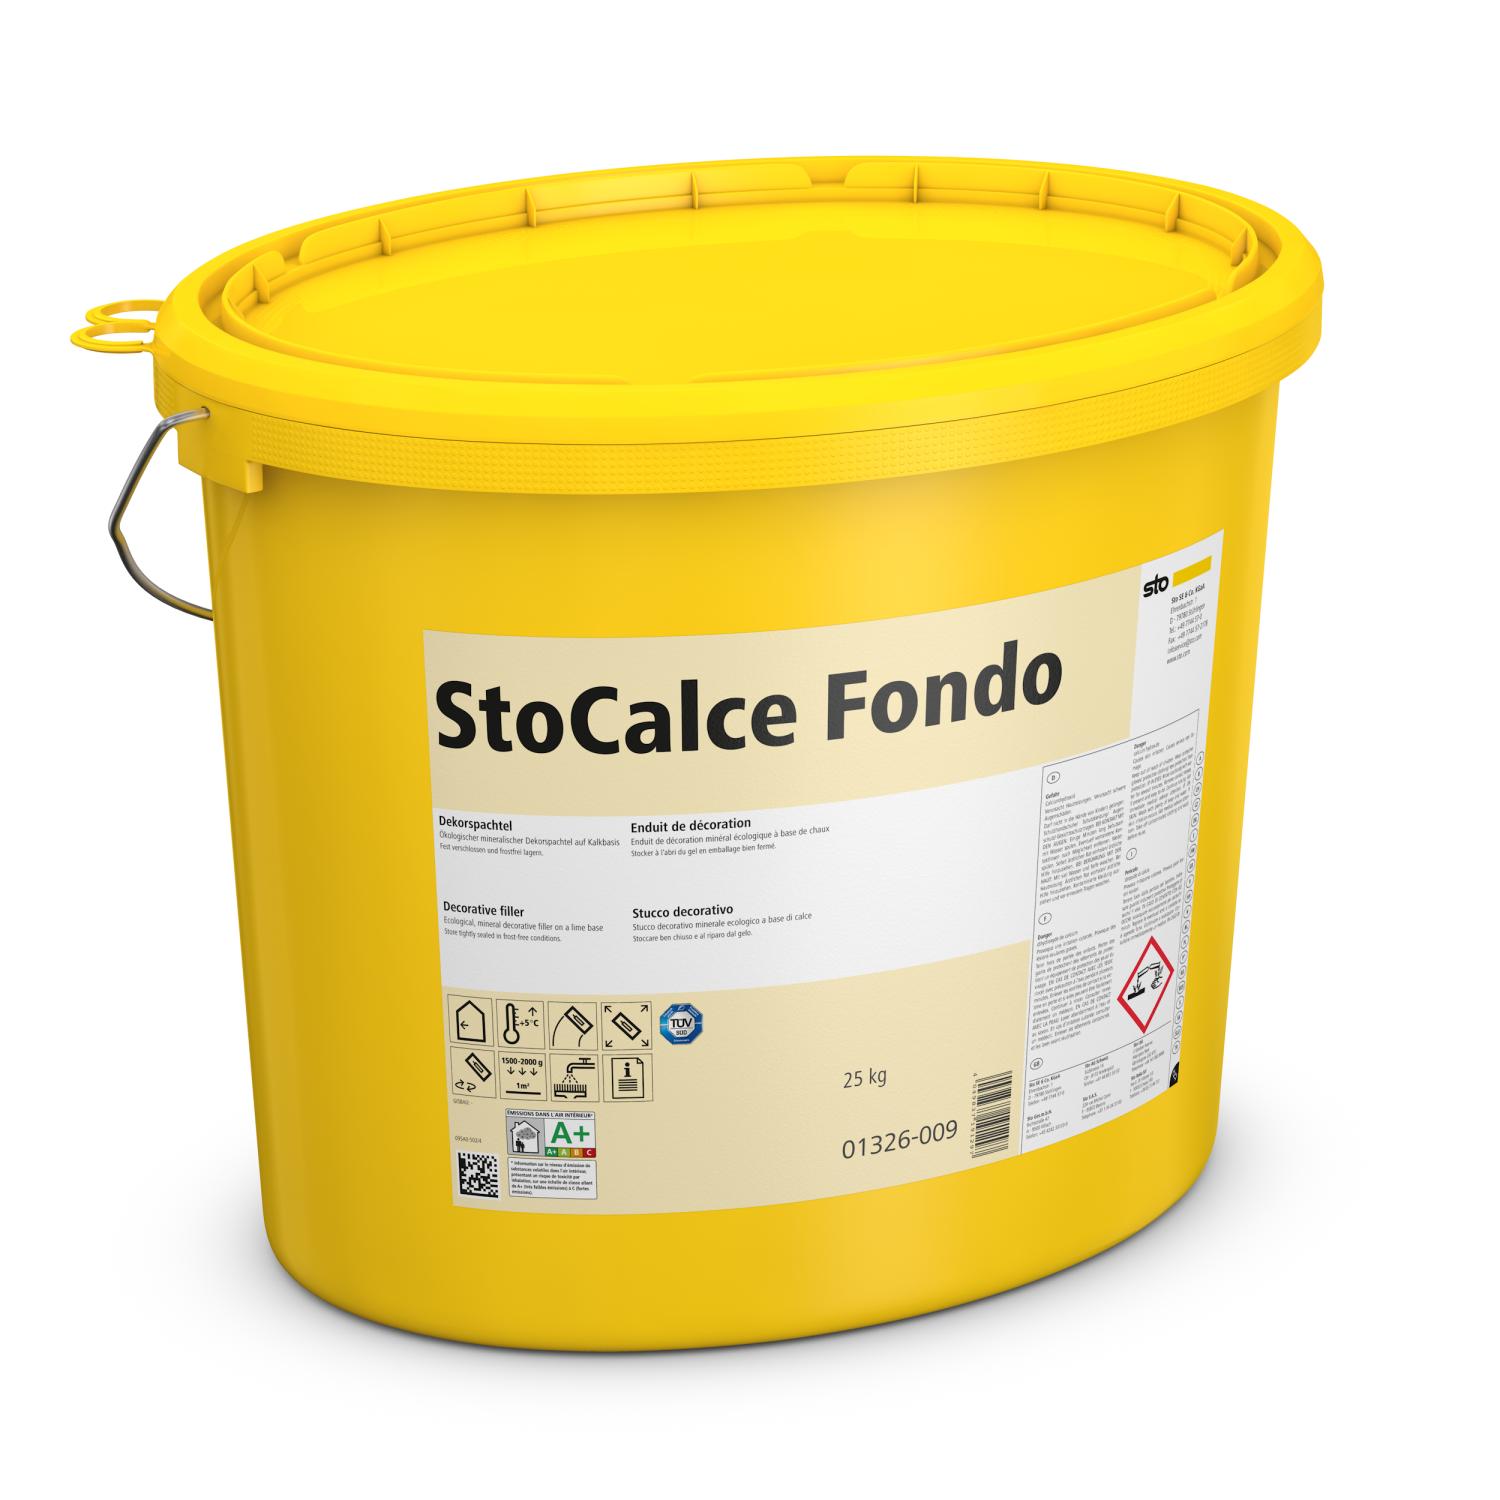 StoCalce Fondo